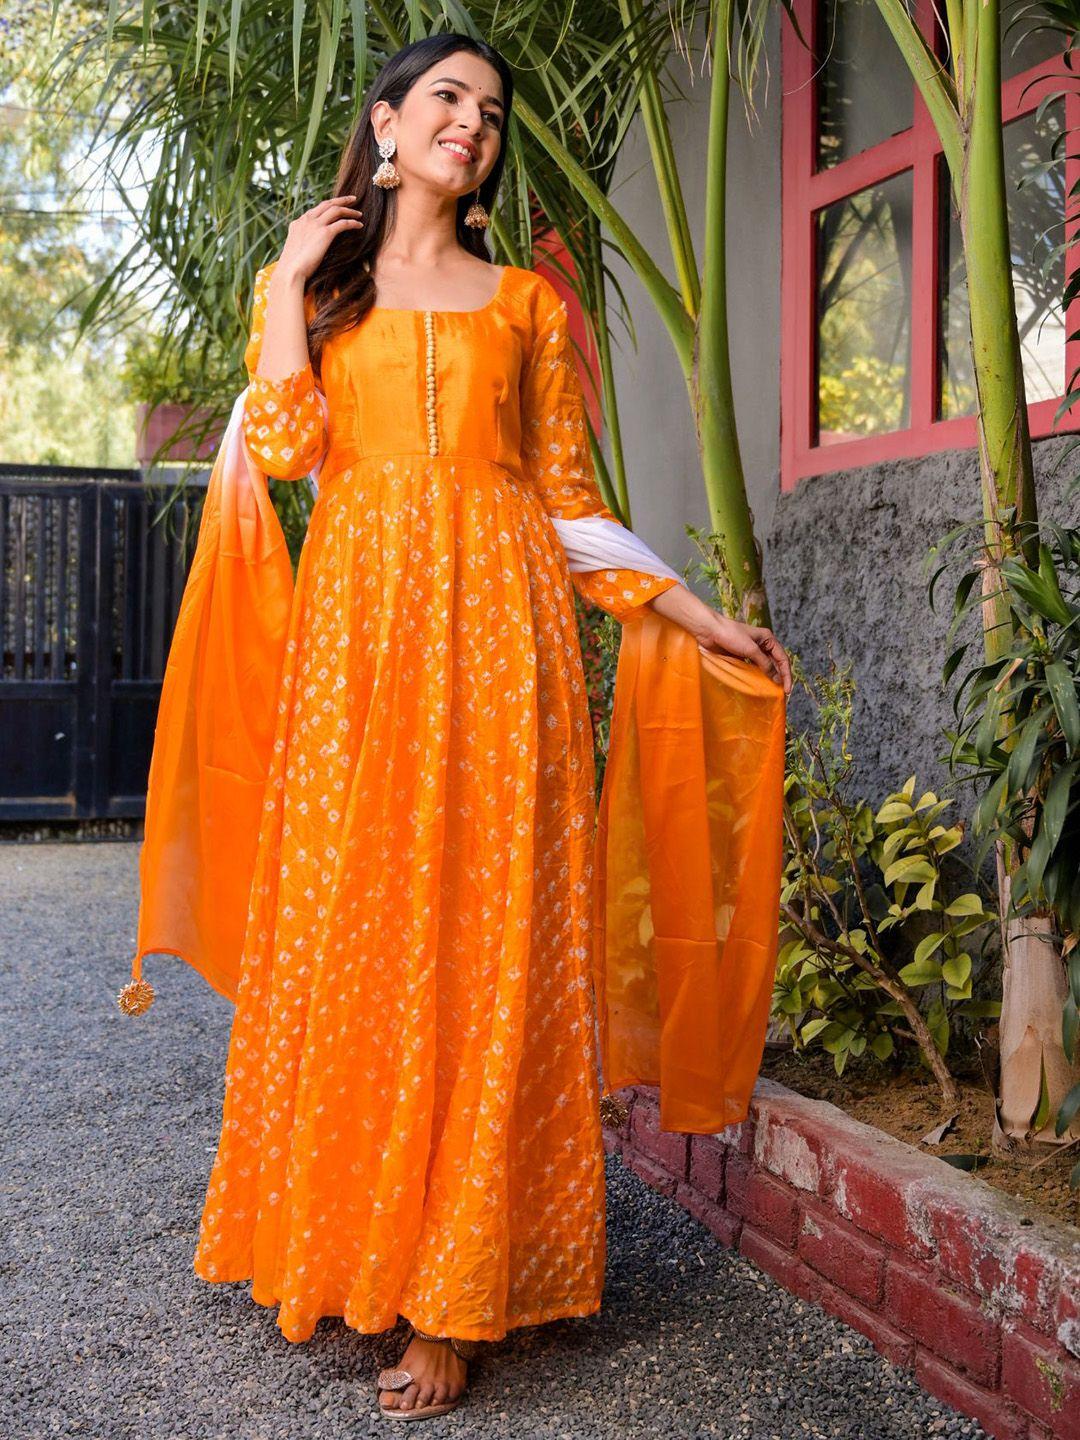 rangpur yellow chiffon ethnic maxi dress